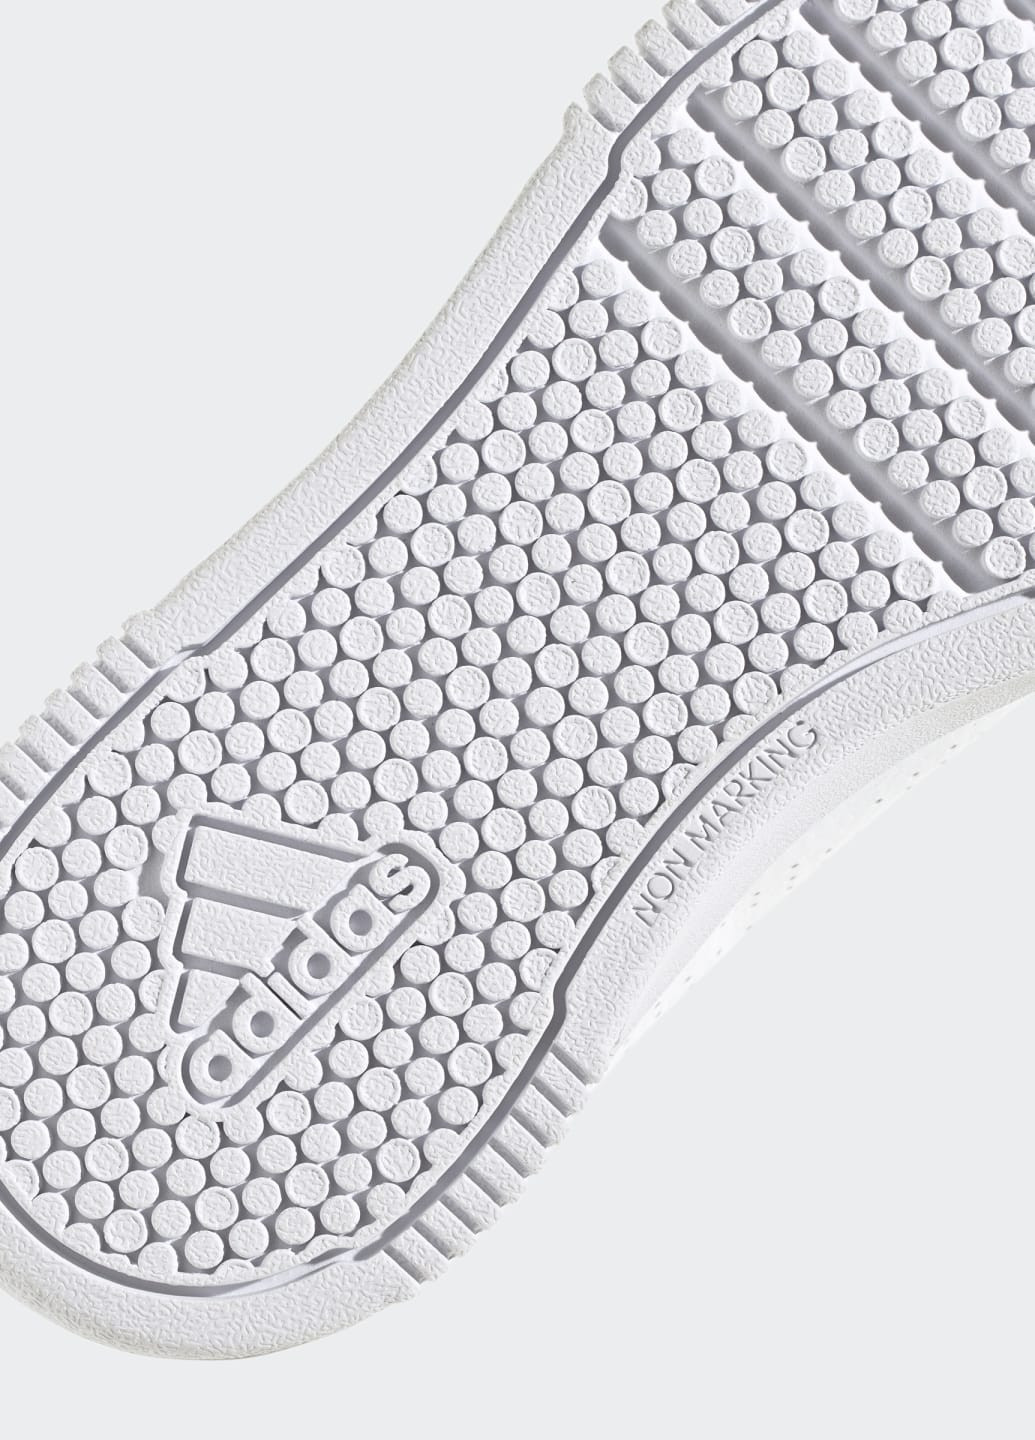 Белые всесезонные кроссовки tensaur sport adidas